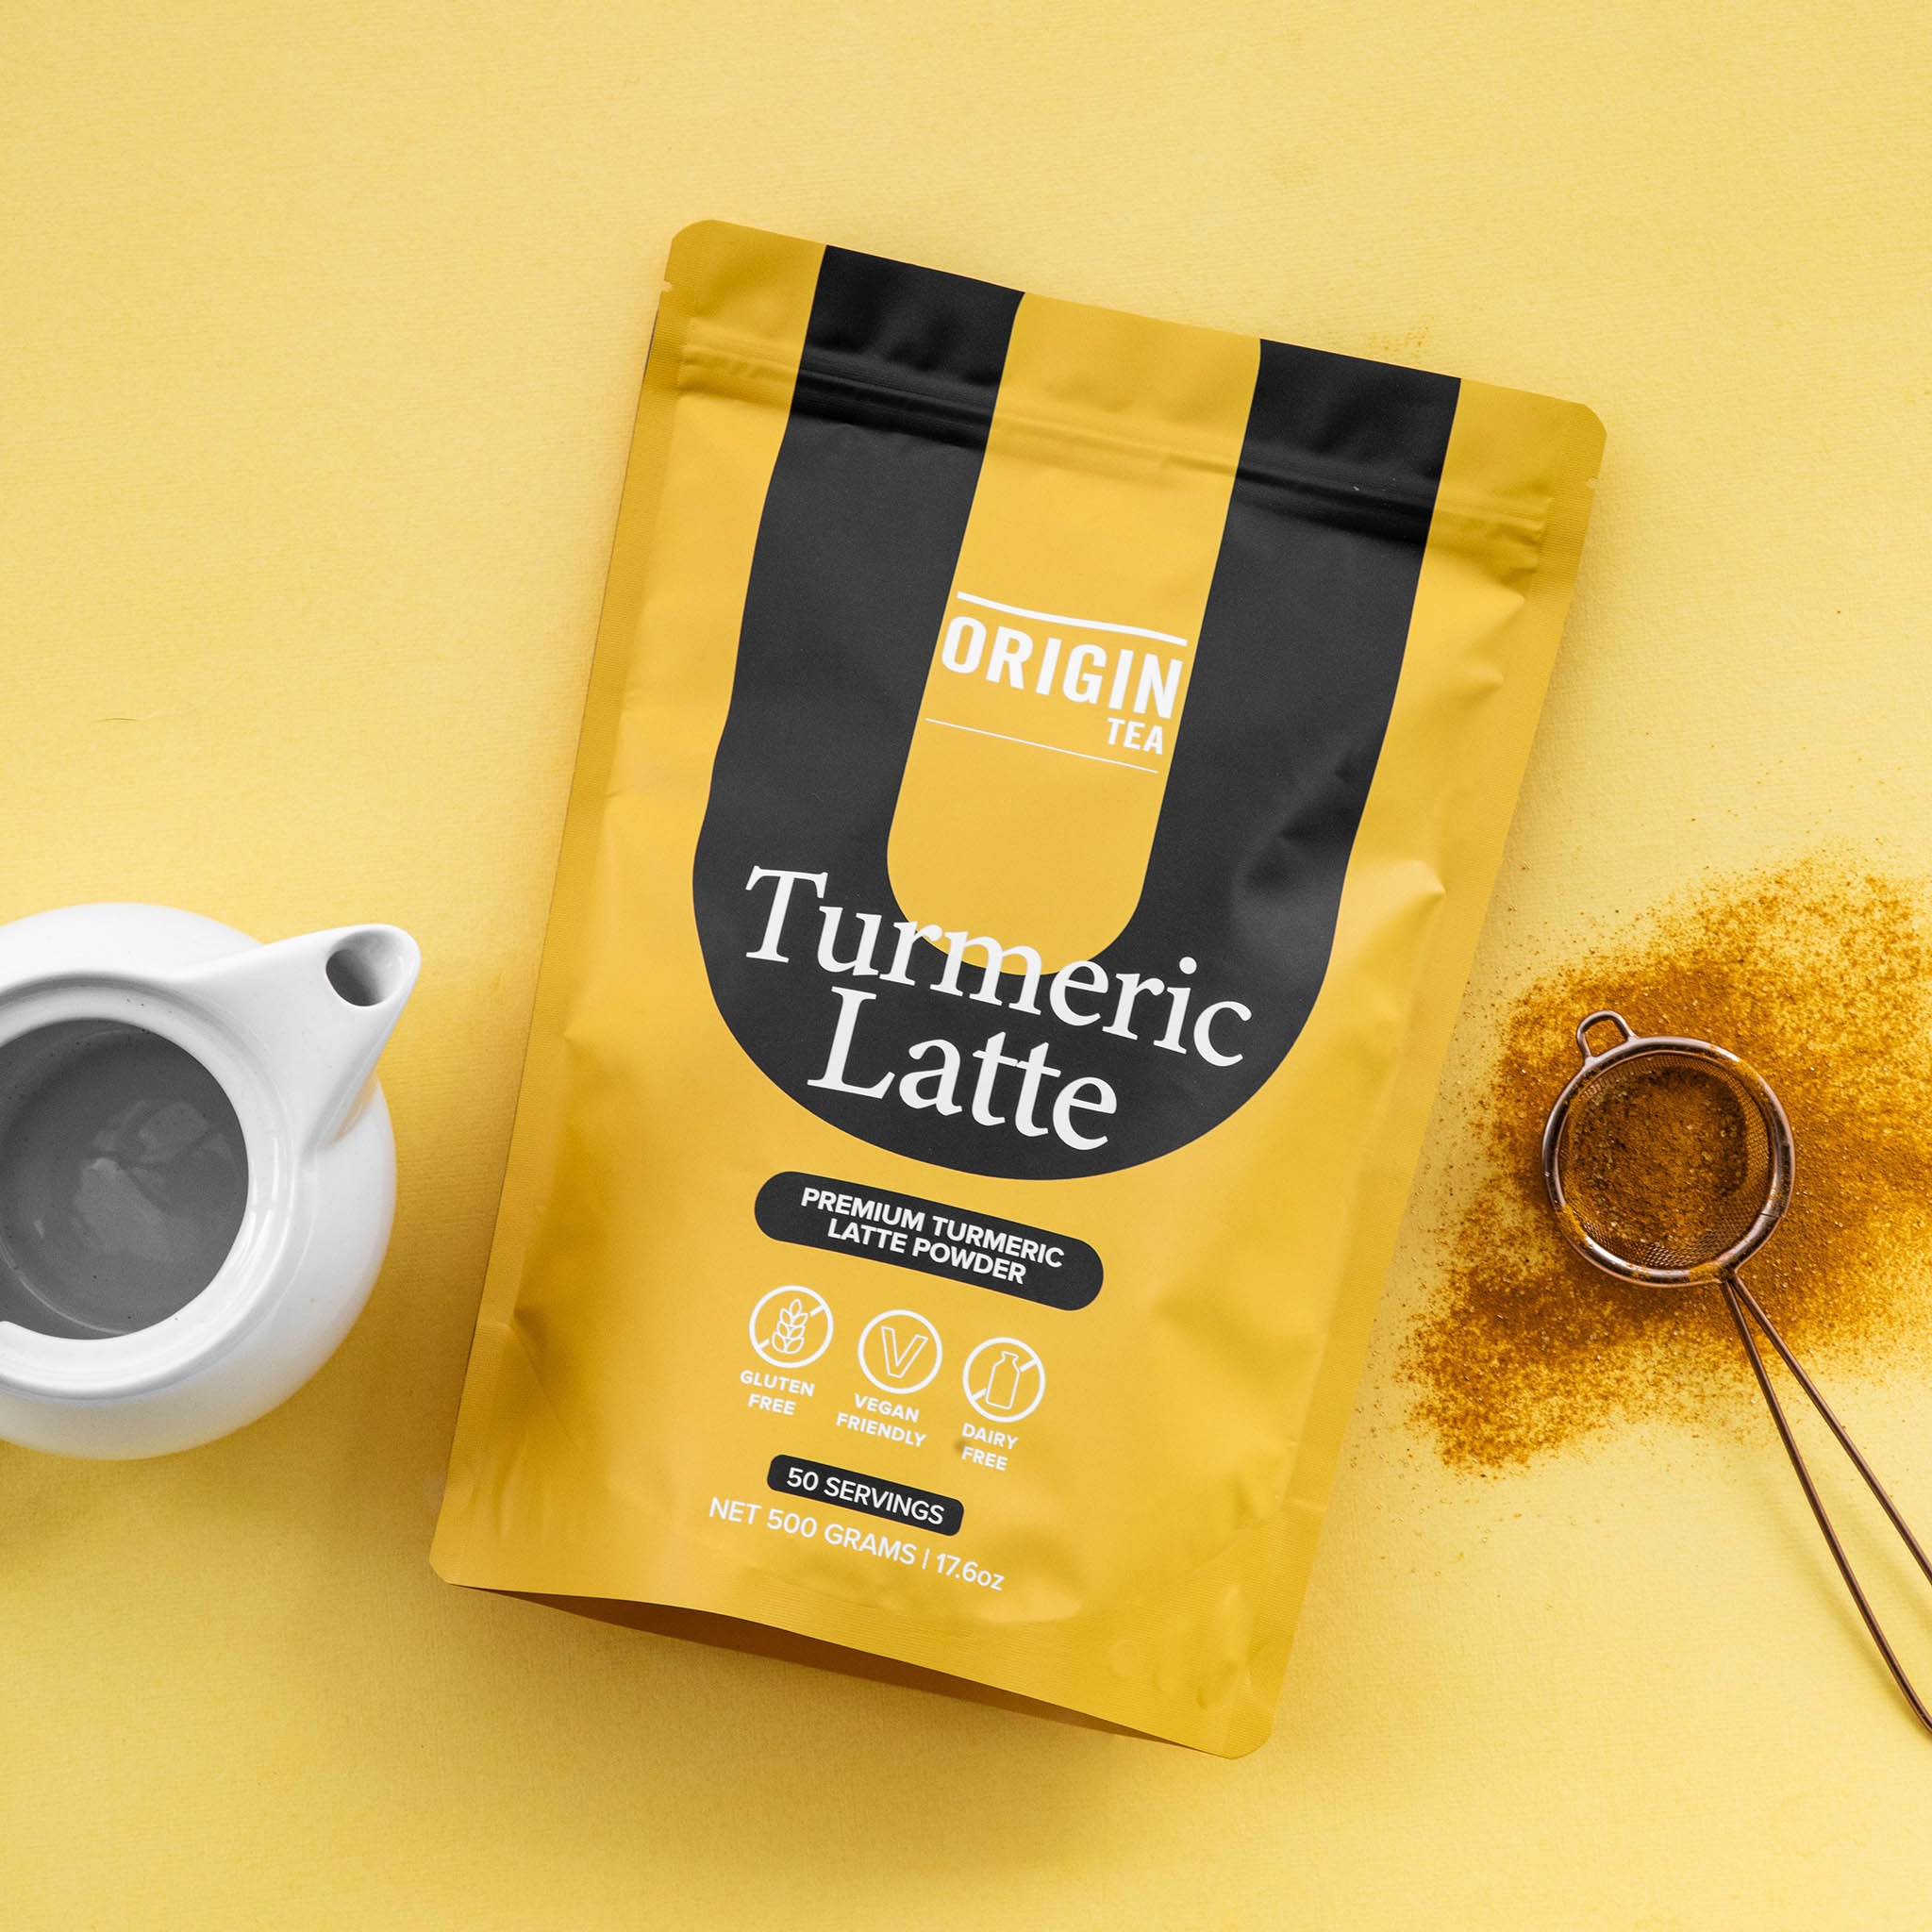 Caffeine Free Turmeric Latte - Origin Tea